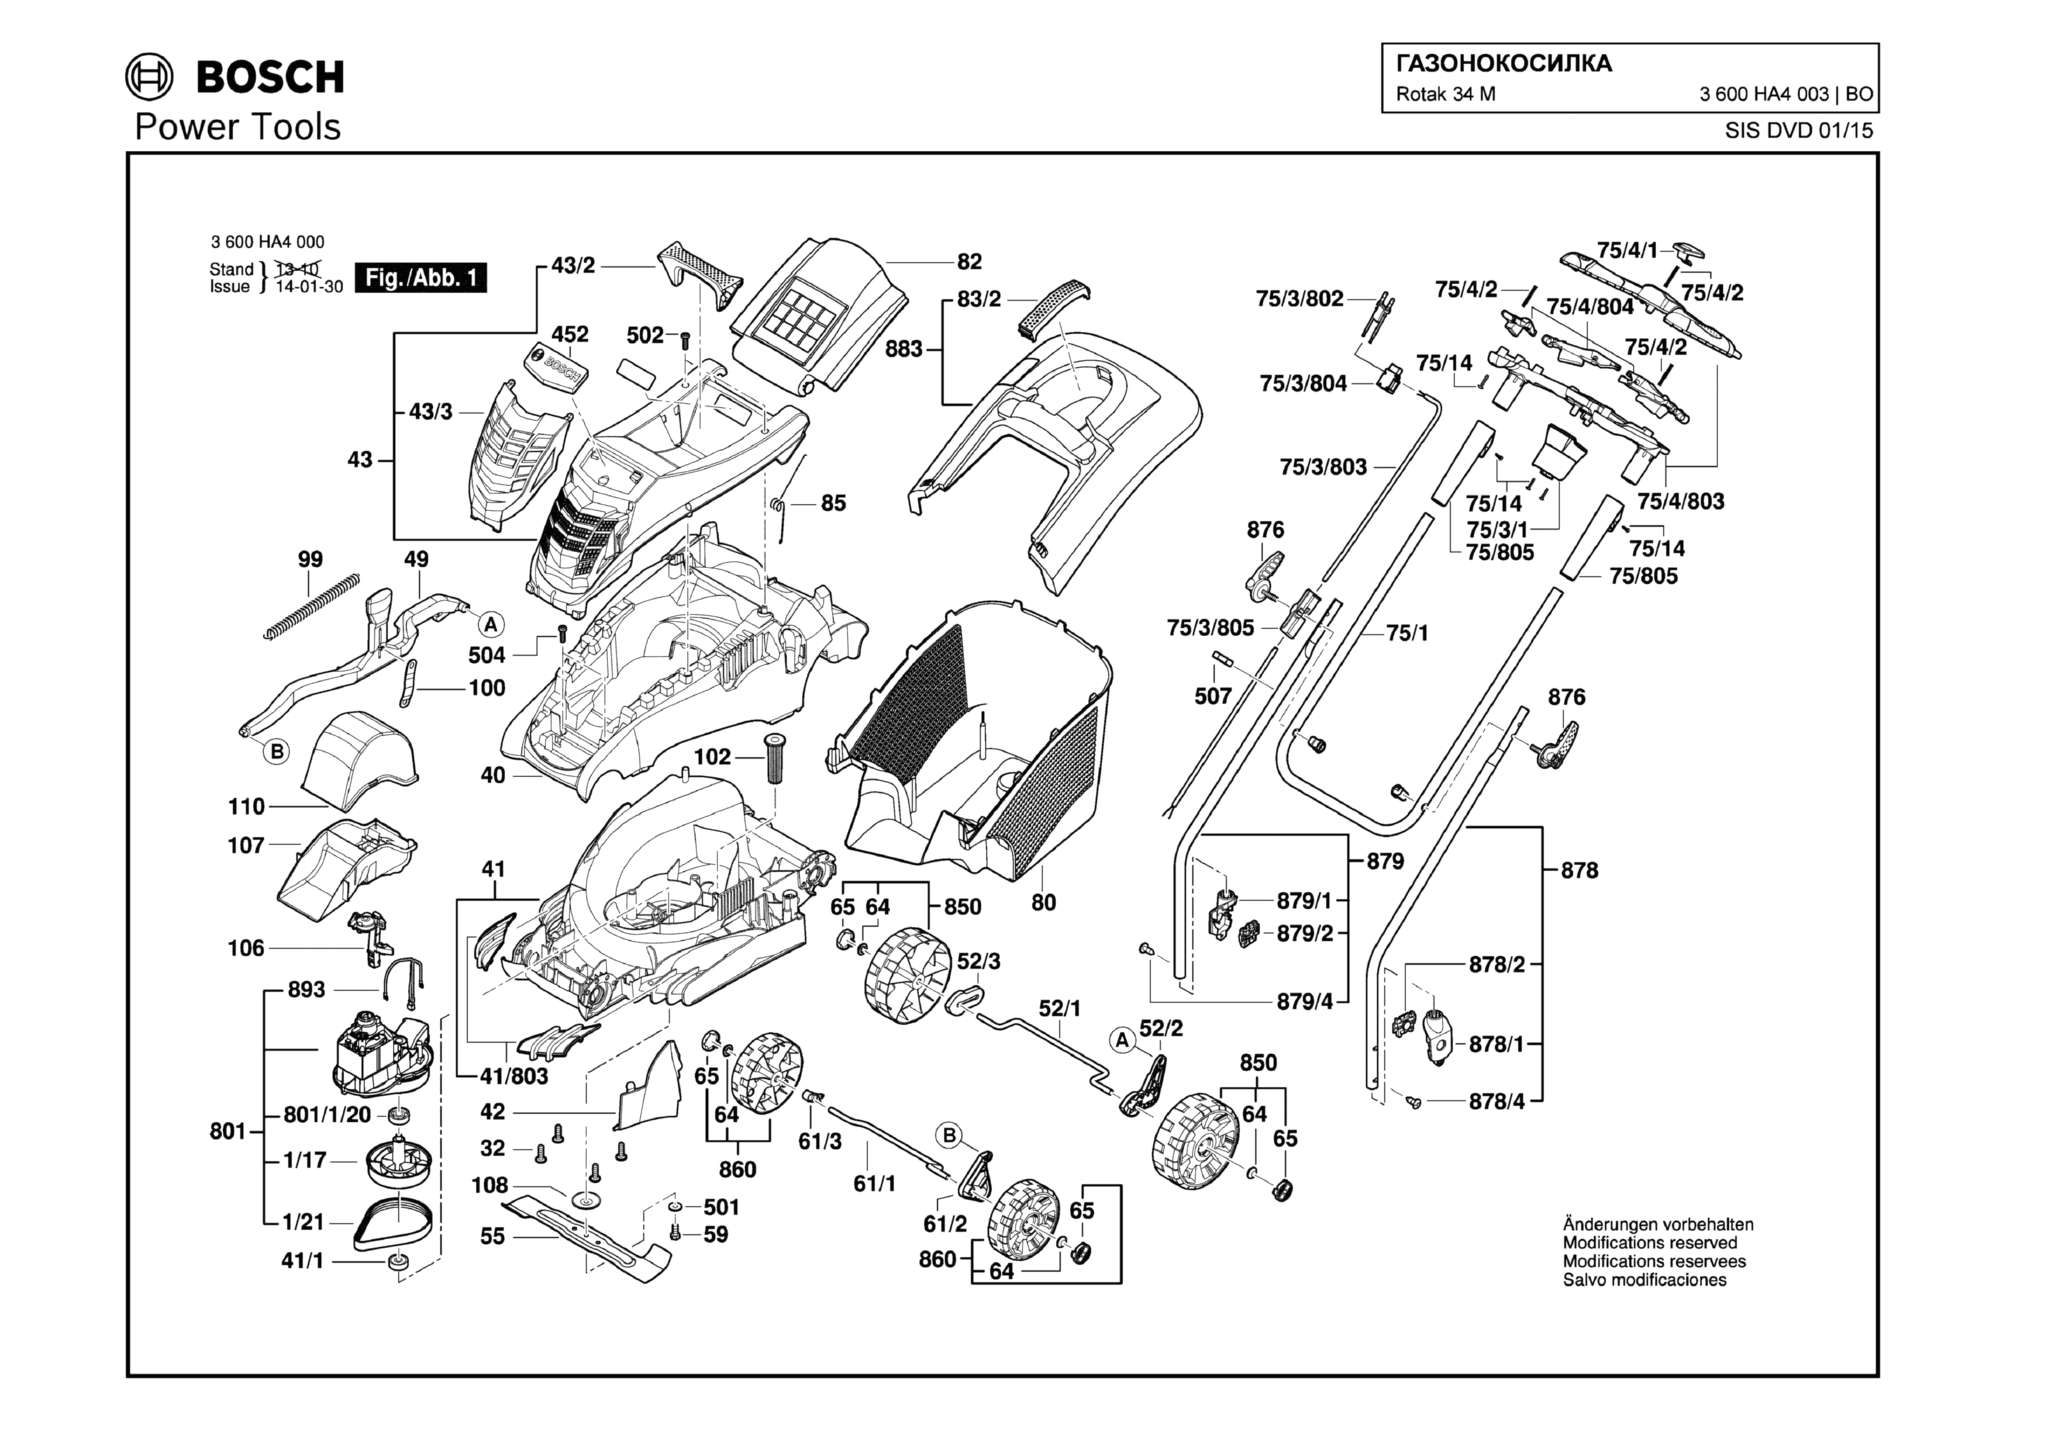 Запчасти, схема и деталировка Bosch ROTAK 34 M (ТИП 3600HA4003)